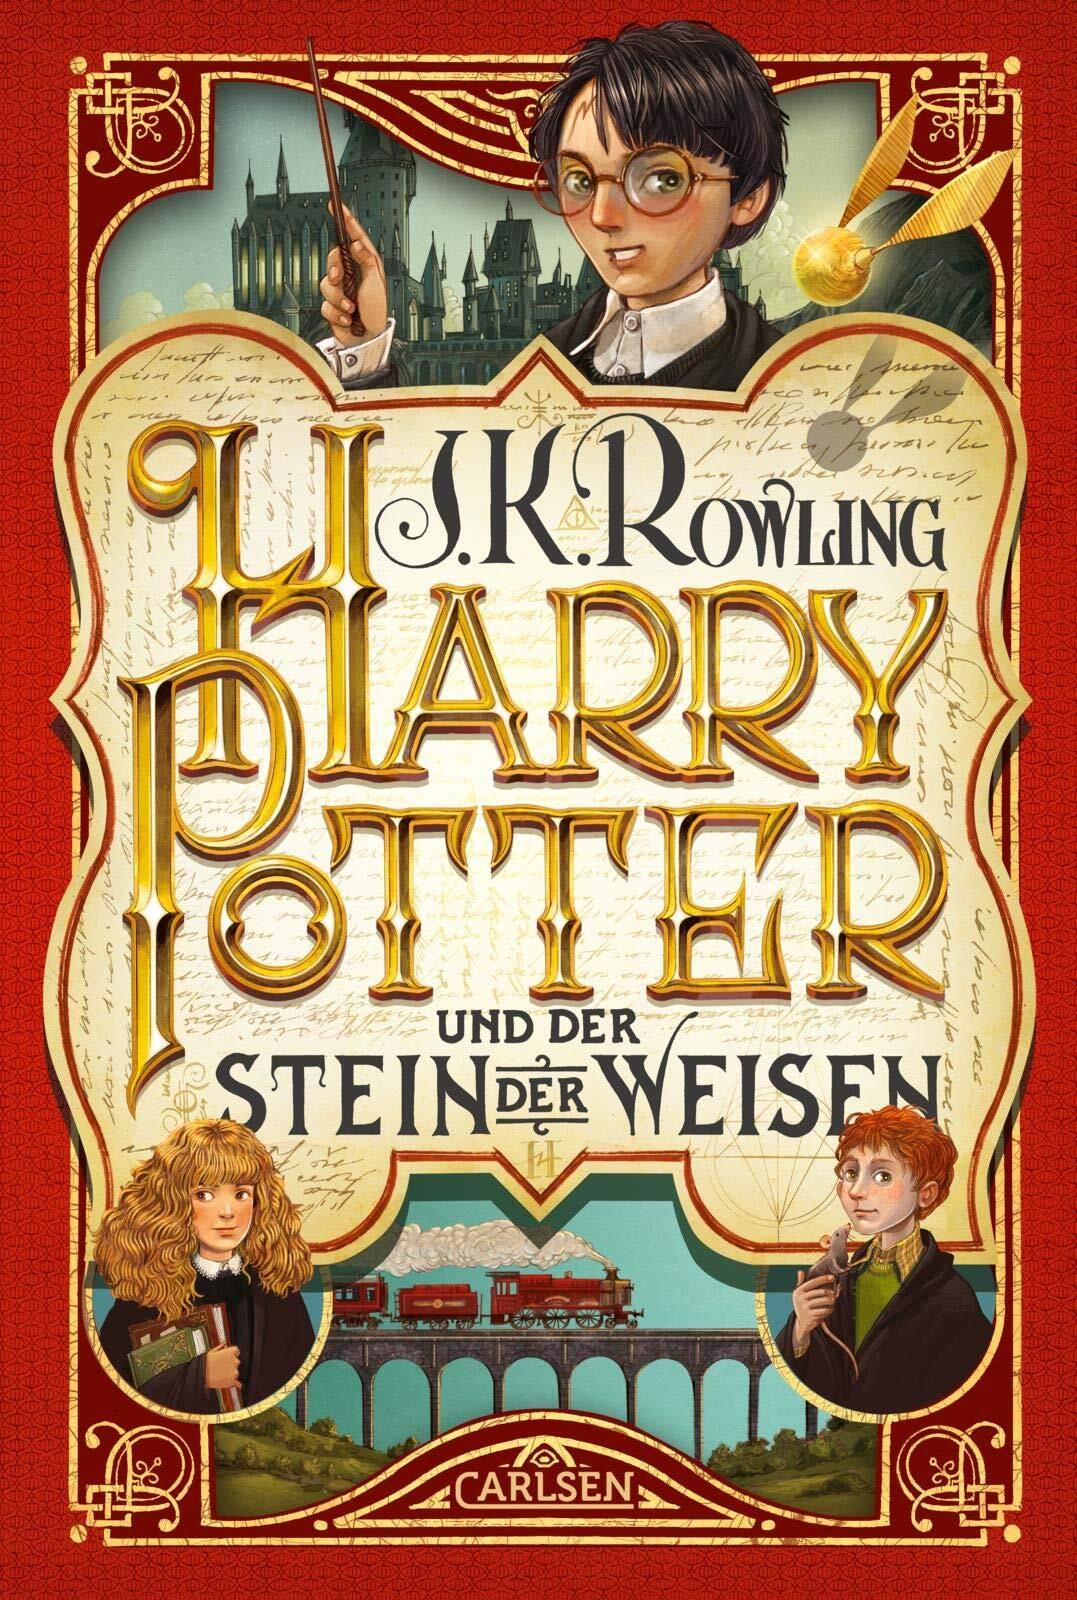 Couvertures, images et illustrations de Harry Potter, Tome 1 : Harry Potter  à l'école des sorciers de Joanne Kathleen Rowling